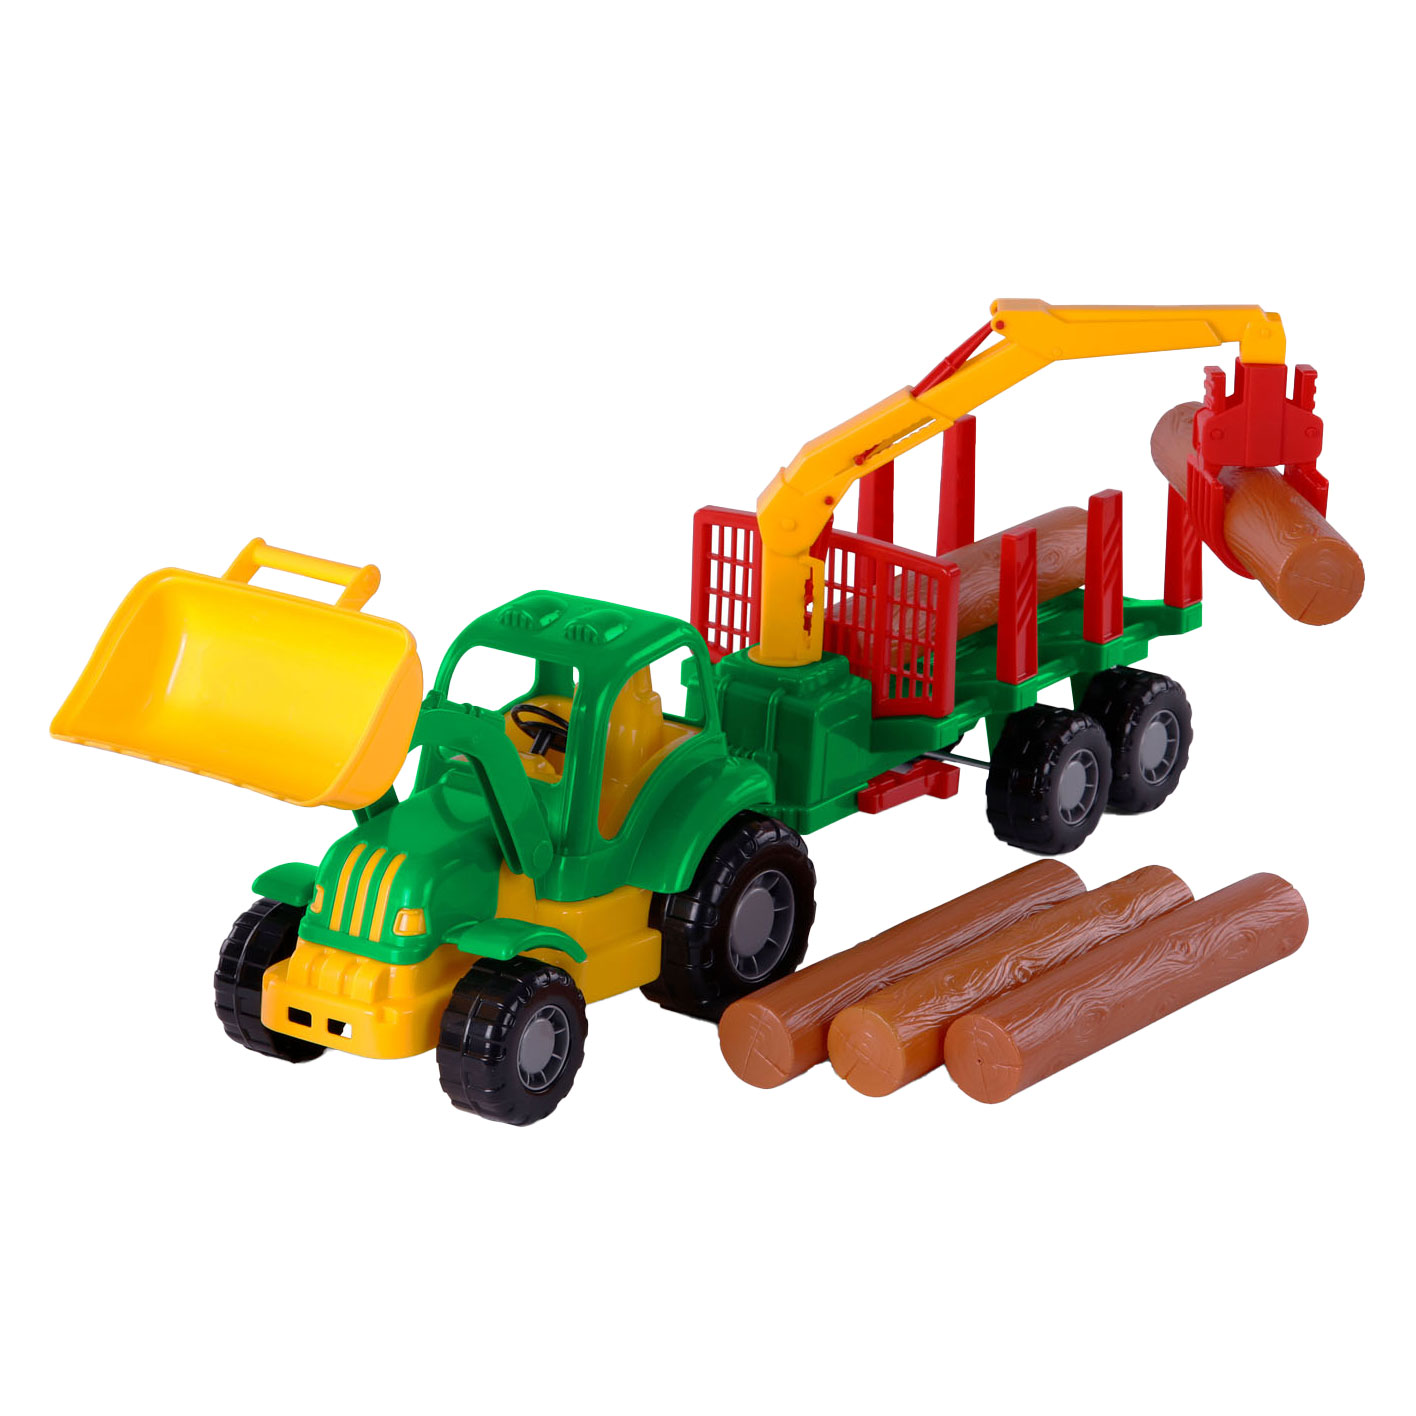 Tracteur Cavallino Classic avec remorque et bois, 61 cm